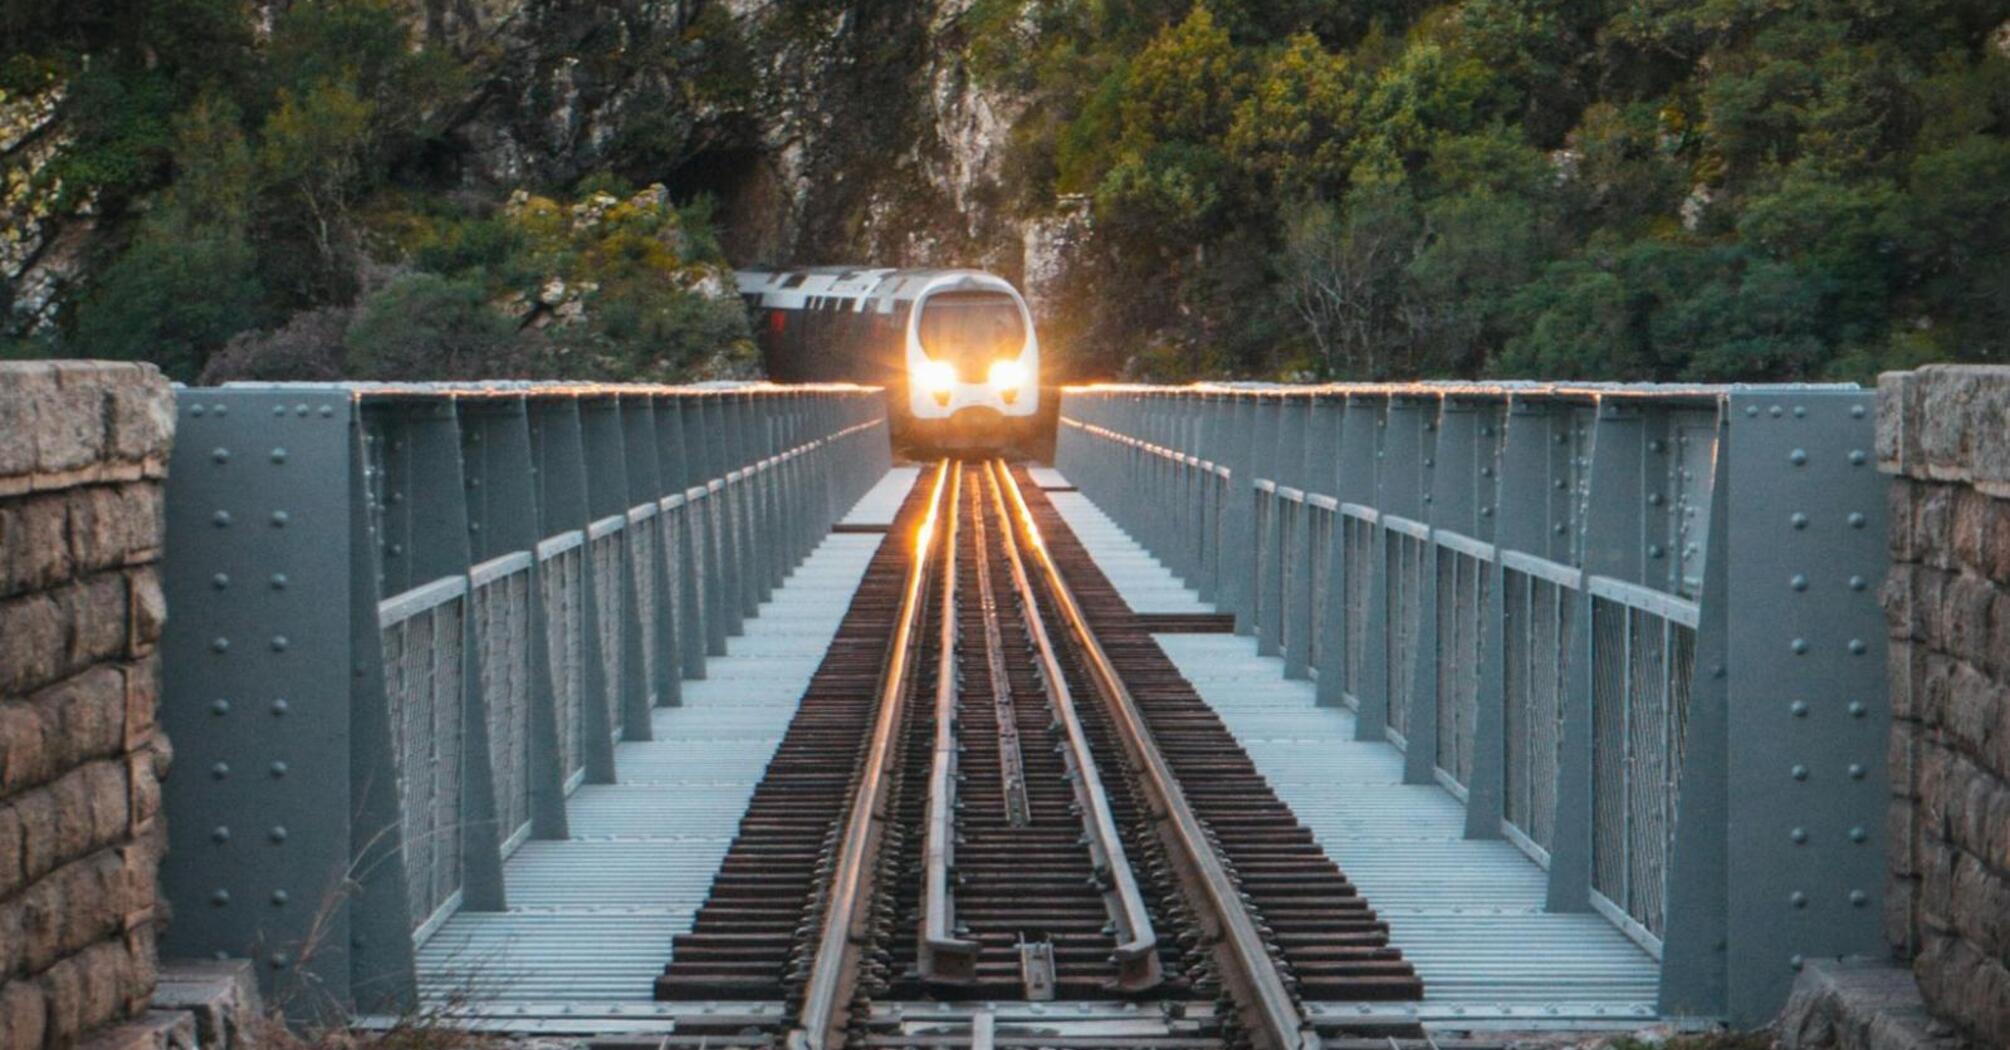 A high-speed train on a rail bridge